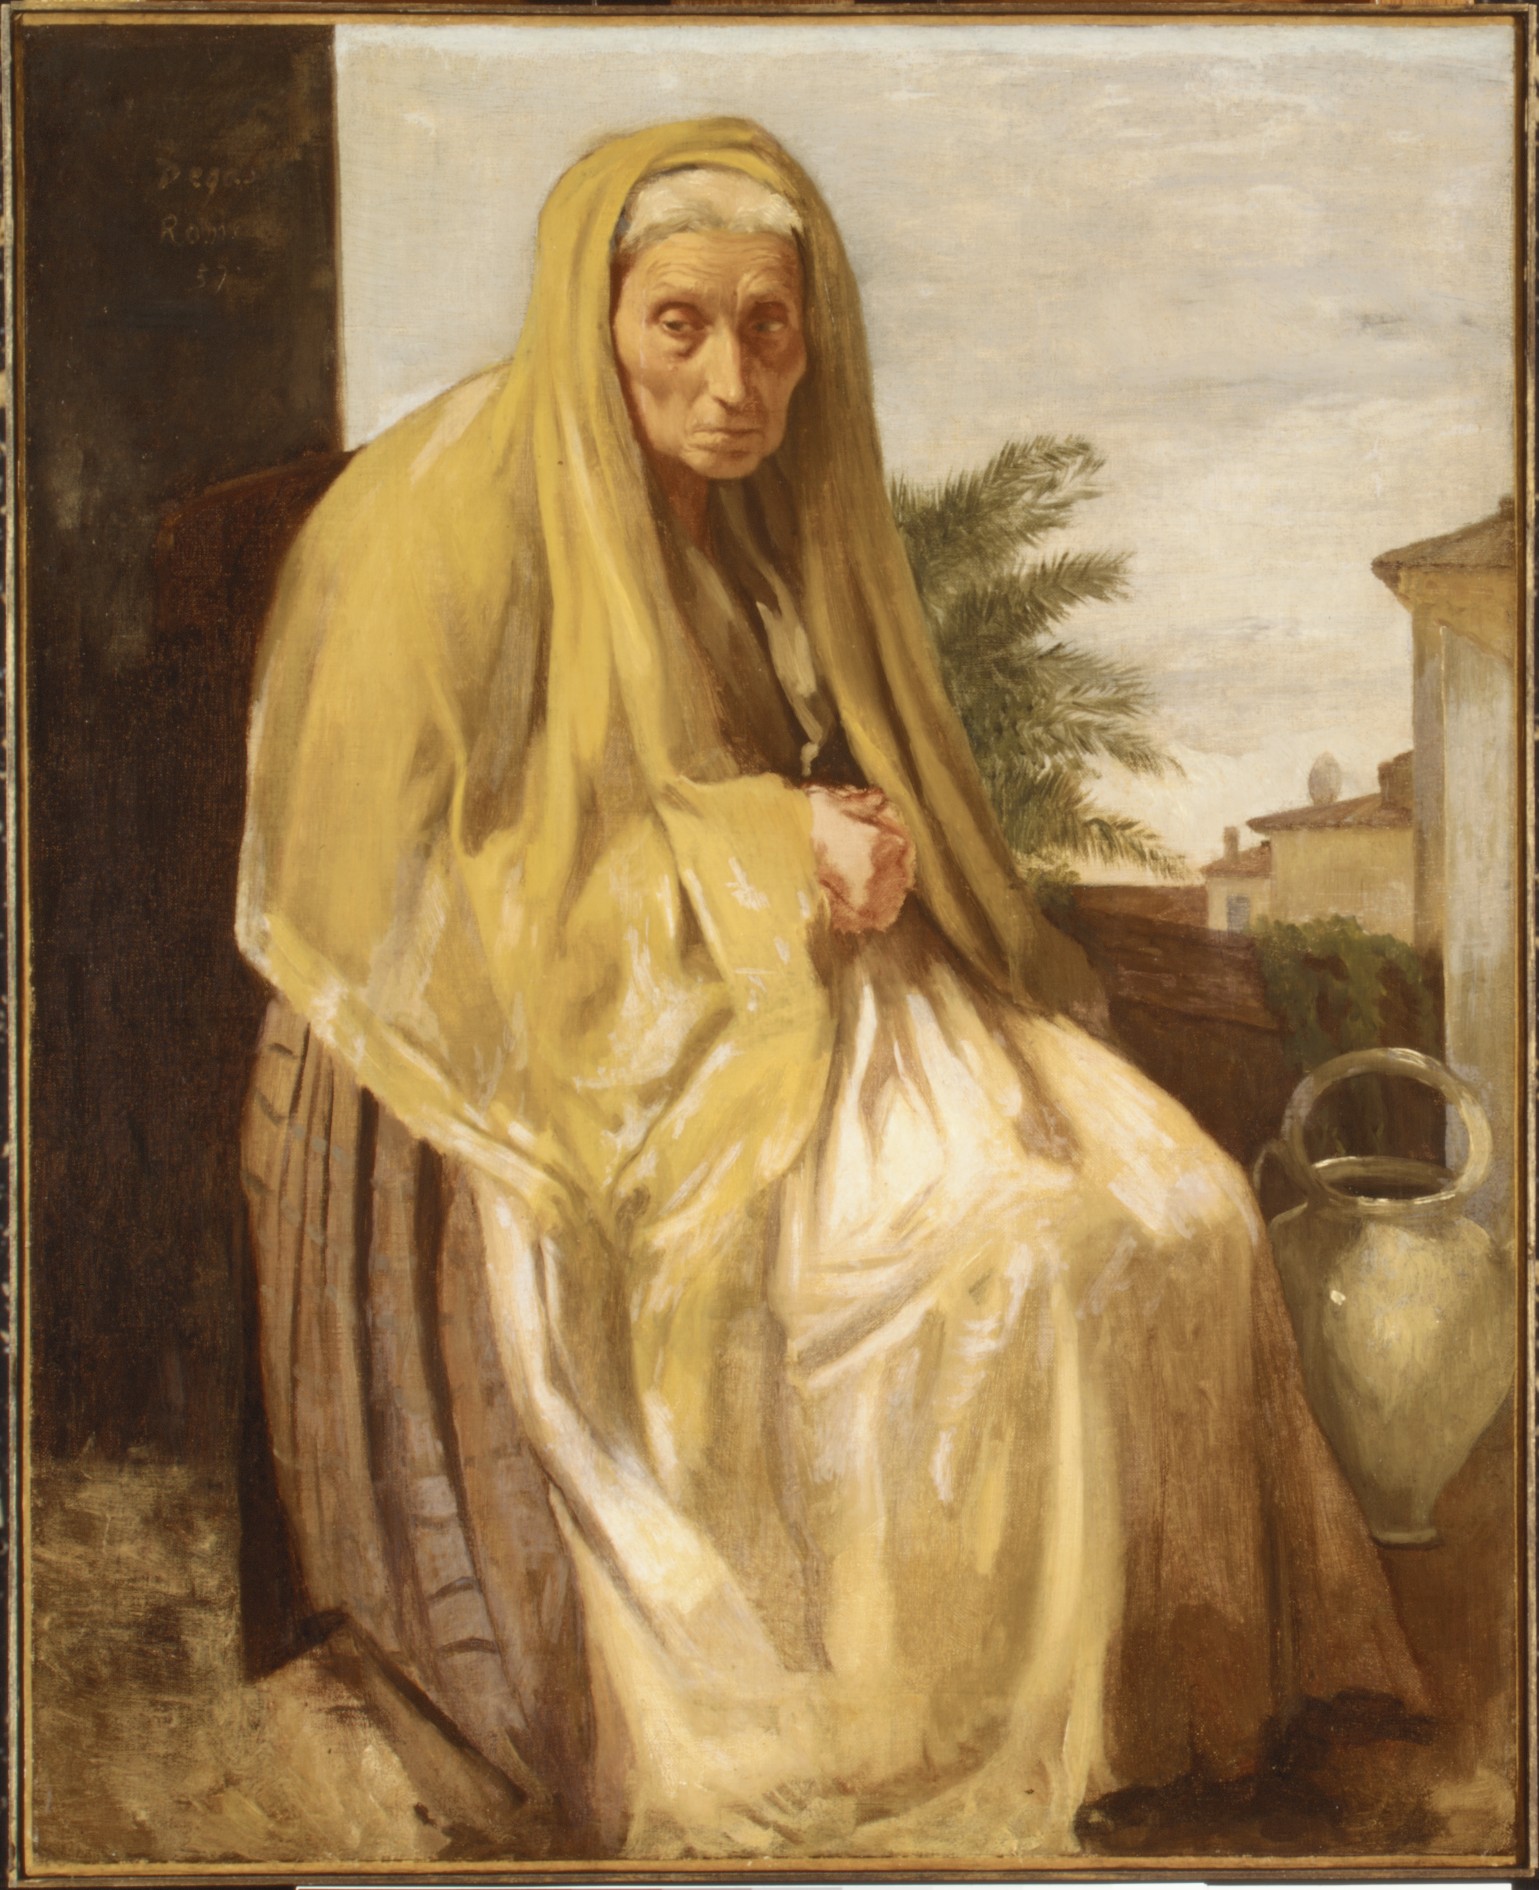 The Old Italian Woman 1857